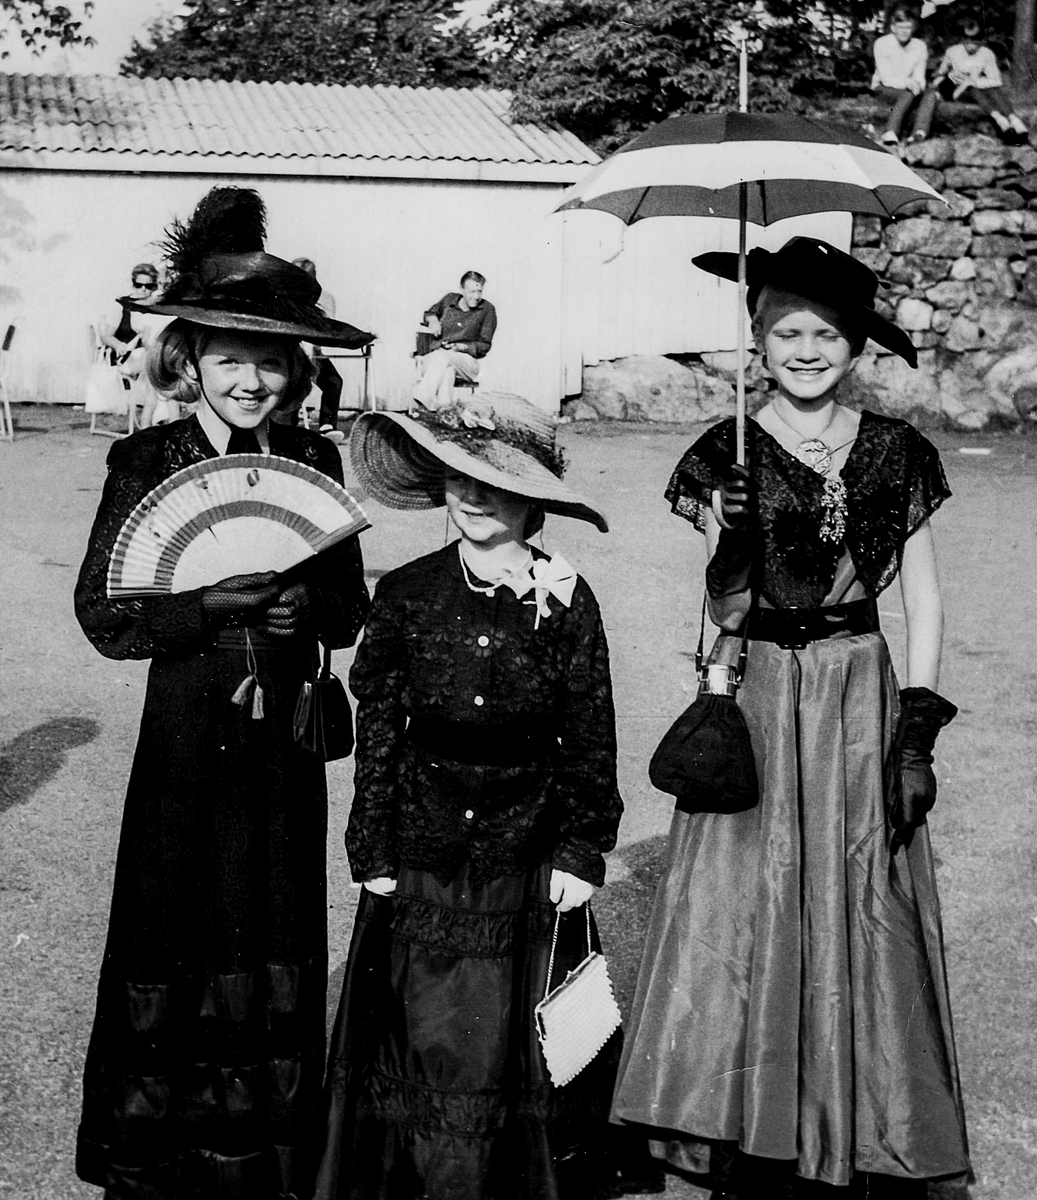 Barnefestival,Kragerø.  Lise Ann Jørgensen, t.v., og to venninner har kledd seg ut. Middelskoletomta.  Ca. 1990-tallet